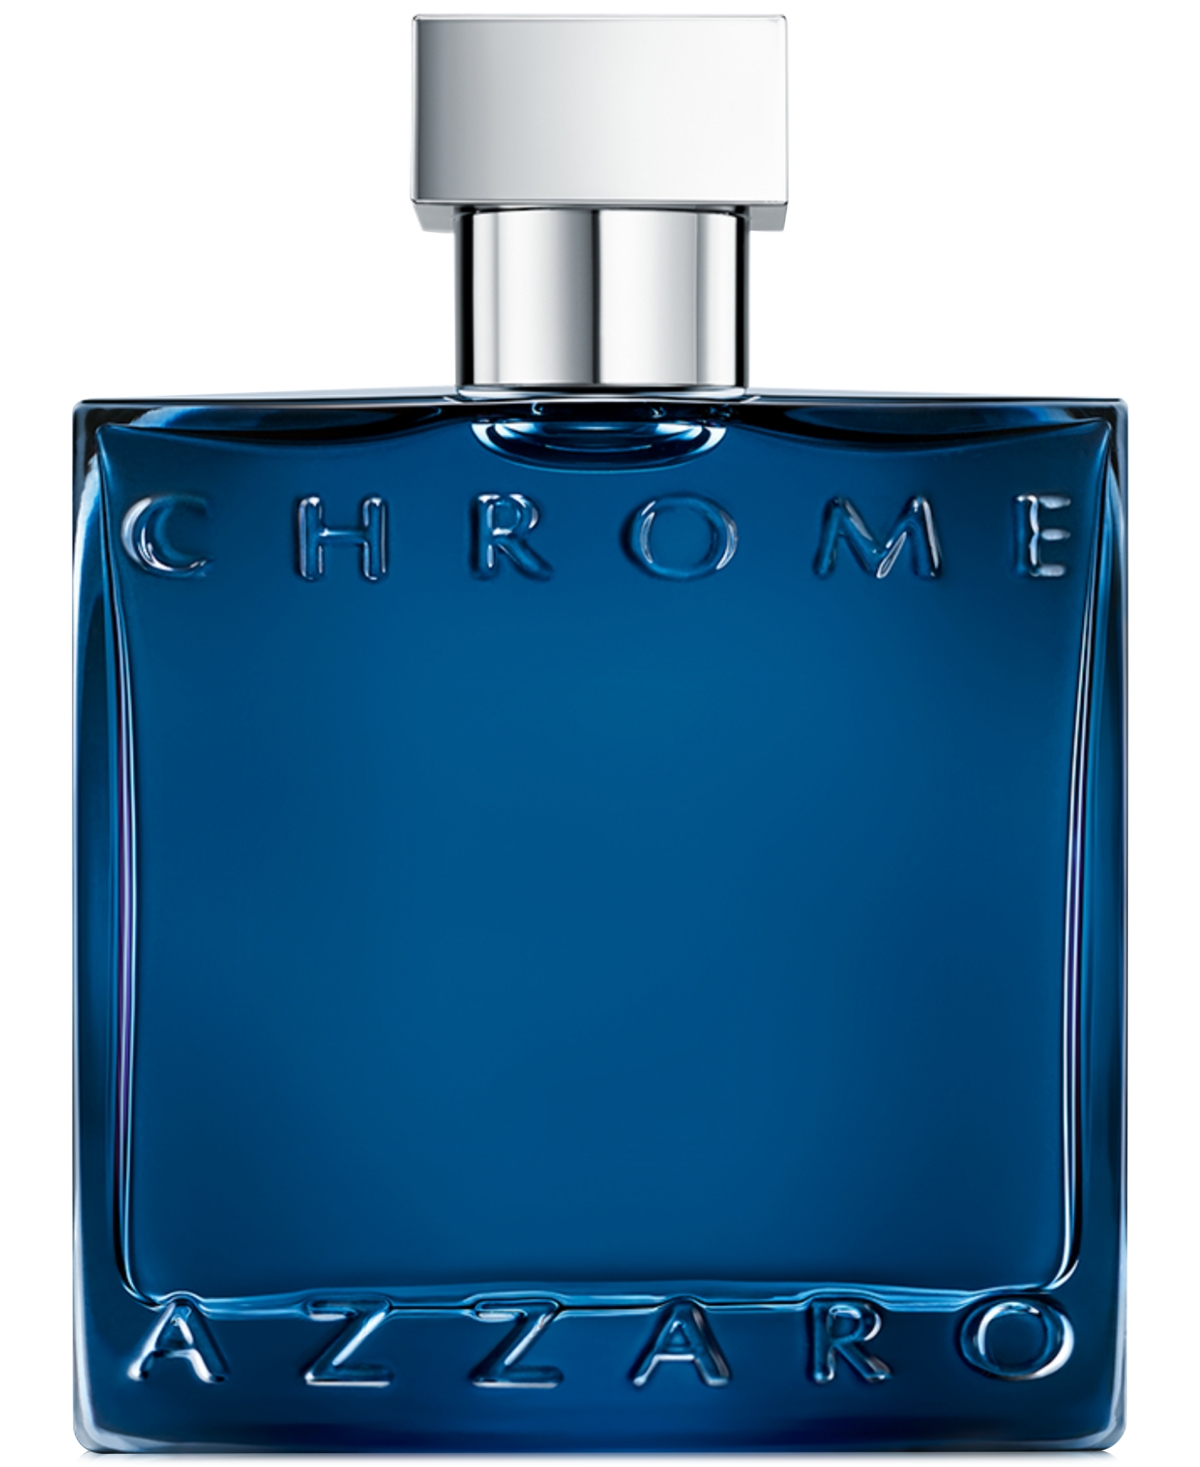 Men's Chrome Parfum Spray, 1.69 oz.